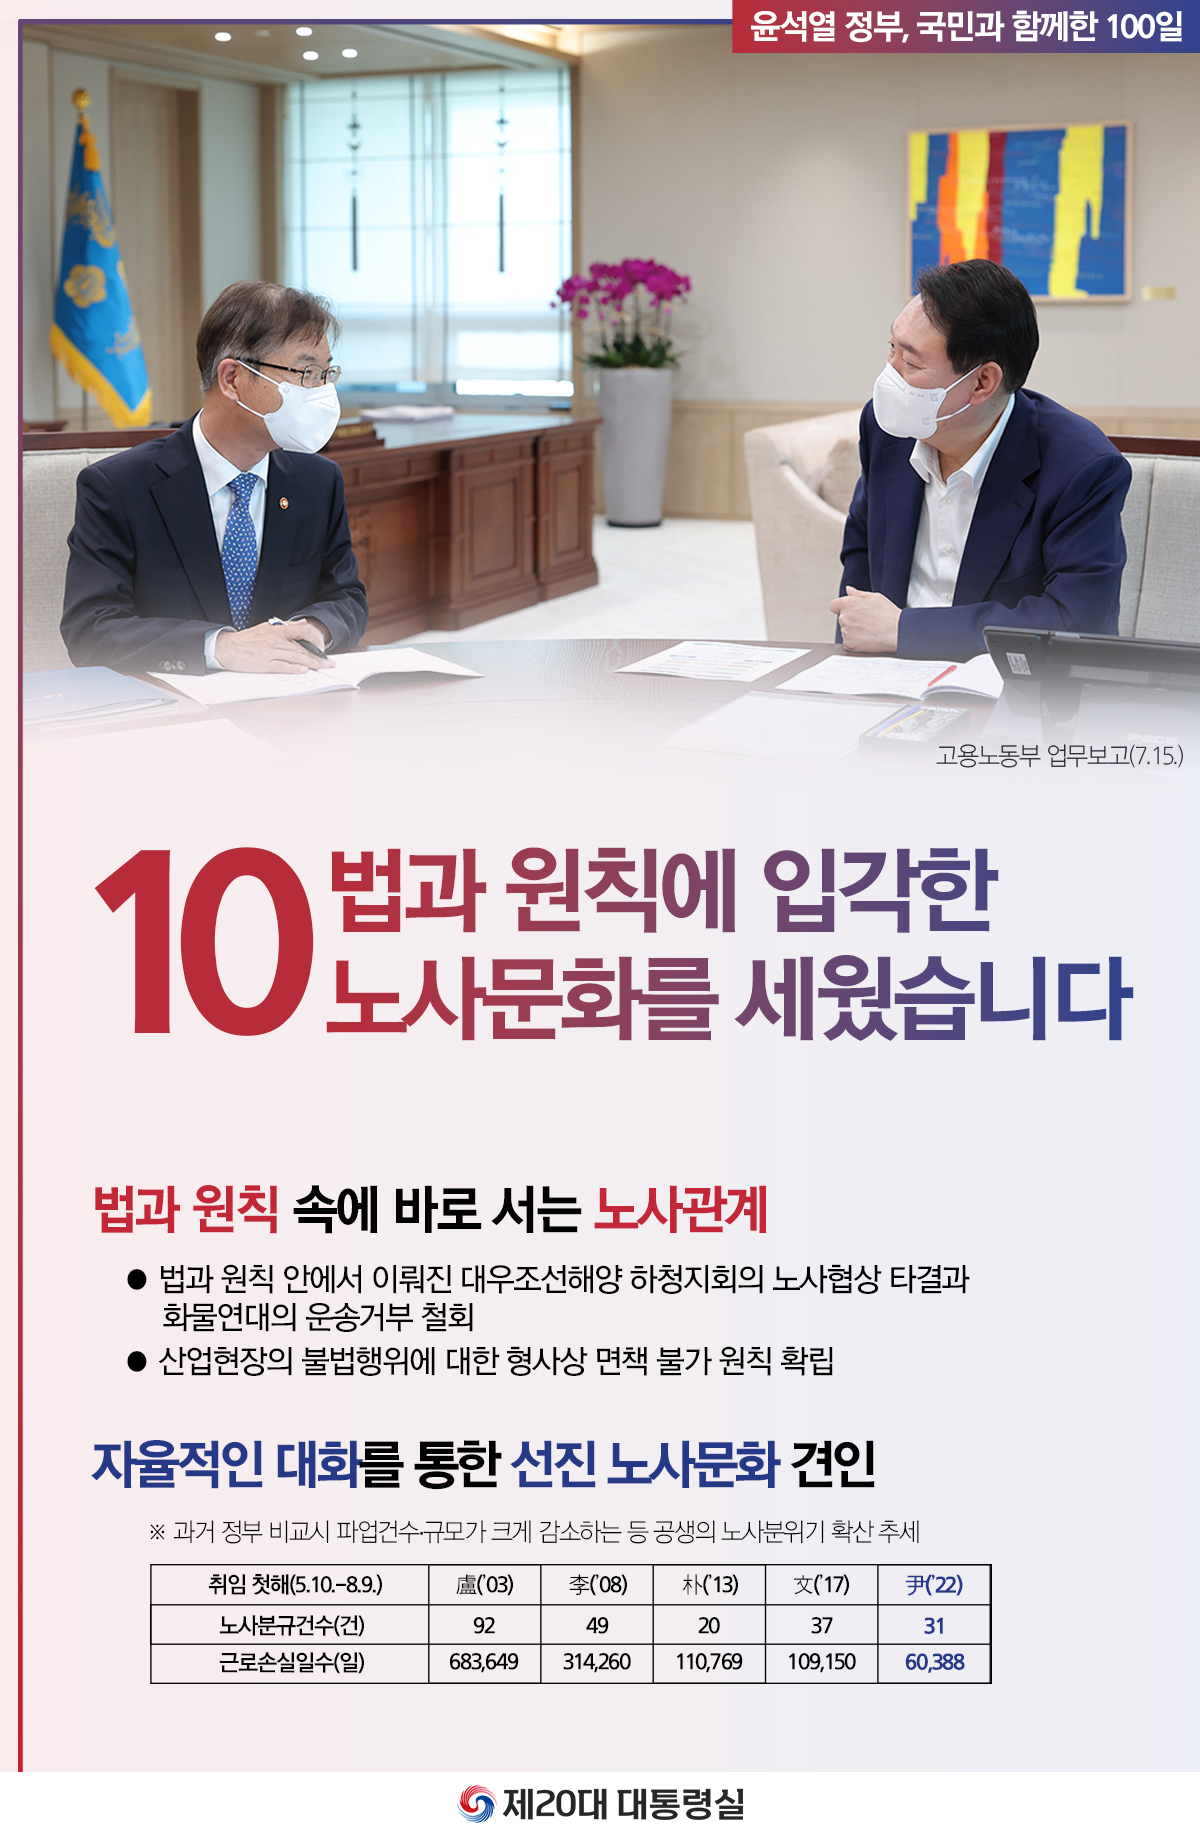 윤석열 정부의 100일, 국민과 함께한 시간들 슬라이드10